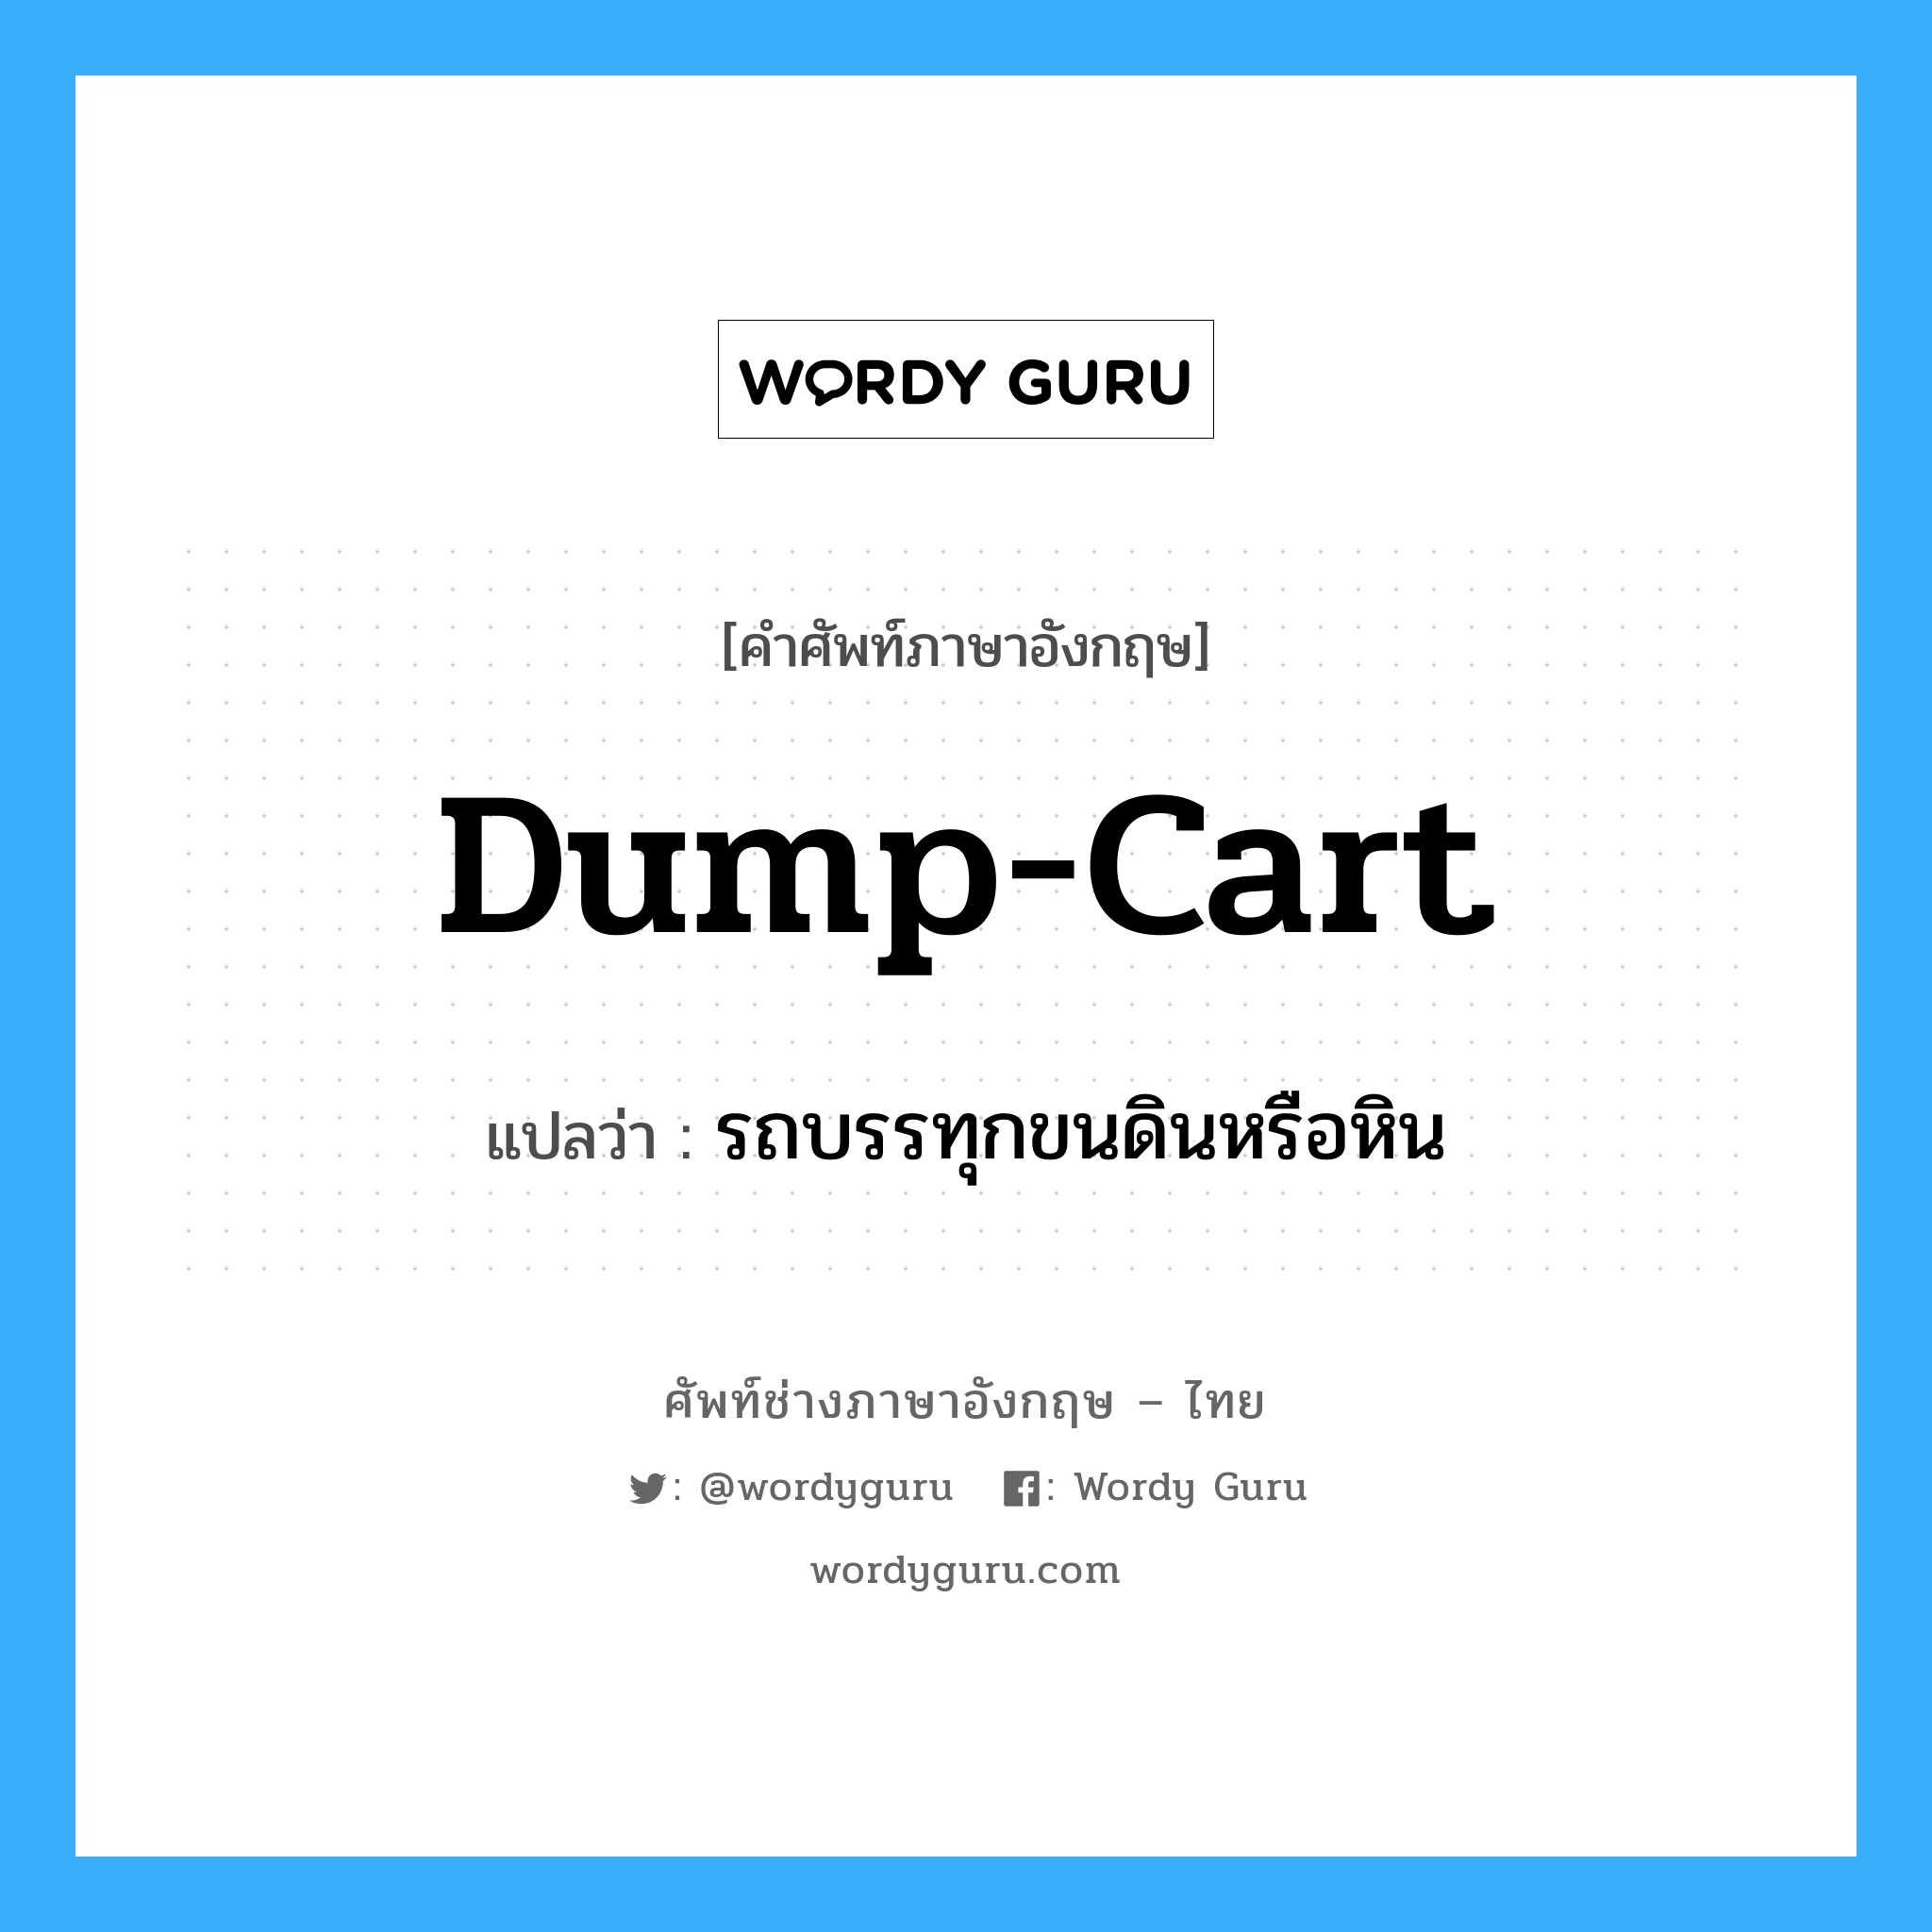 dump-cart แปลว่า?, คำศัพท์ช่างภาษาอังกฤษ - ไทย dump-cart คำศัพท์ภาษาอังกฤษ dump-cart แปลว่า รถบรรทุกขนดินหรือหิน